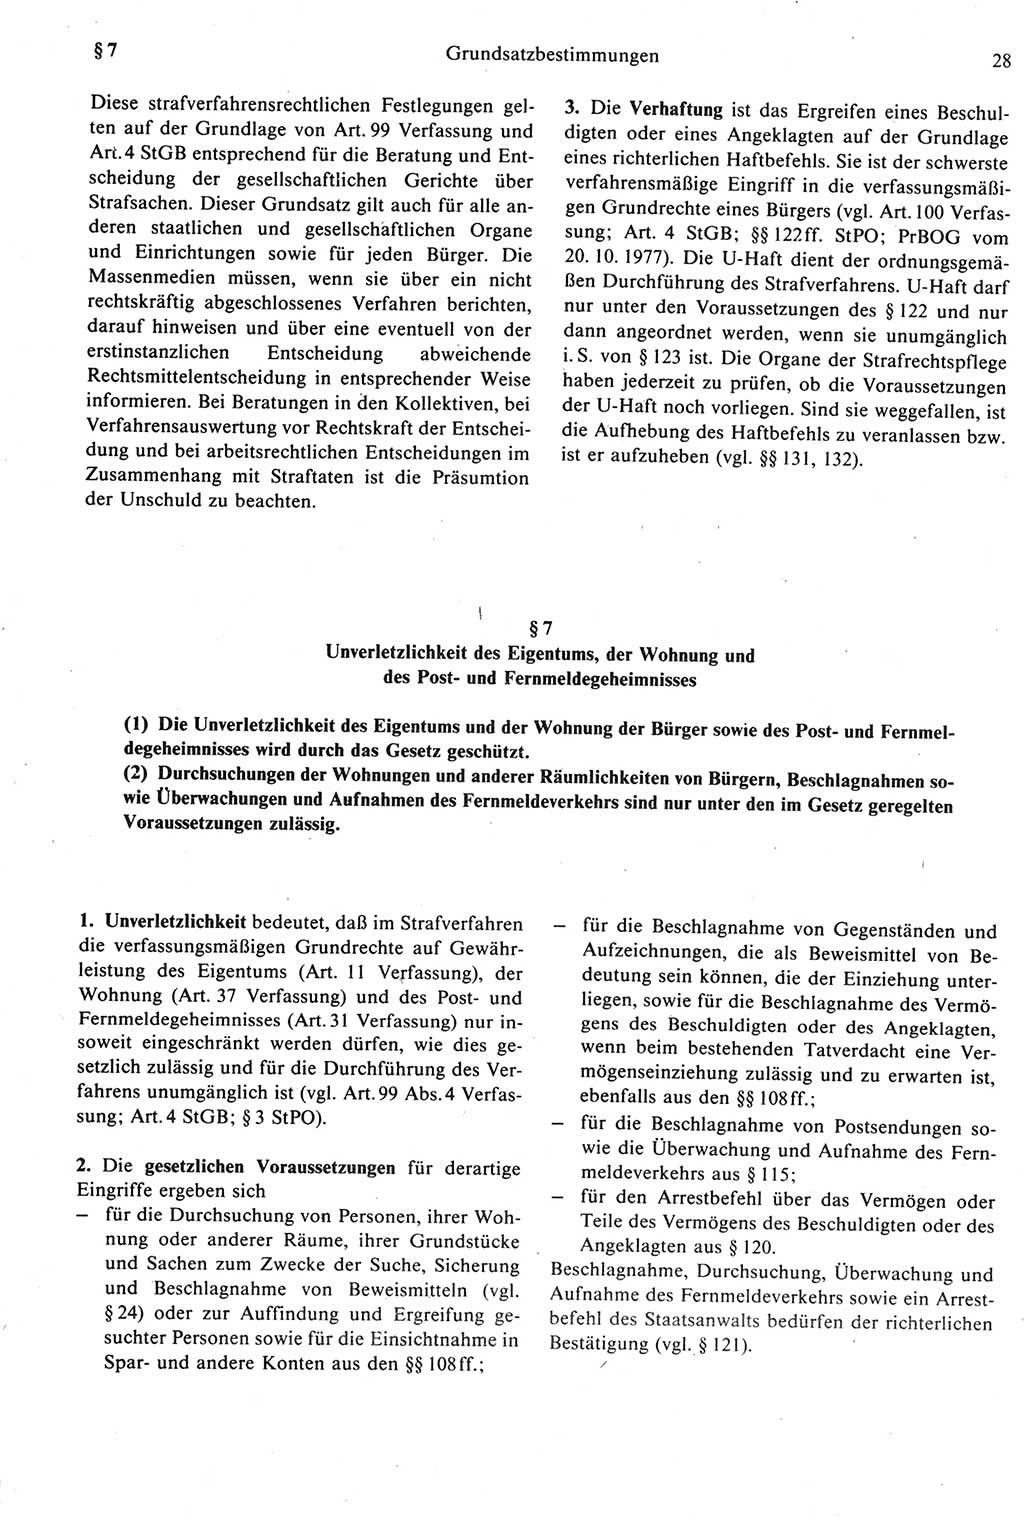 Strafprozeßrecht der DDR [Deutsche Demokratische Republik], Kommentar zur Strafprozeßordnung (StPO) 1987, Seite 28 (Strafprozeßr. DDR Komm. StPO 1987, S. 28)